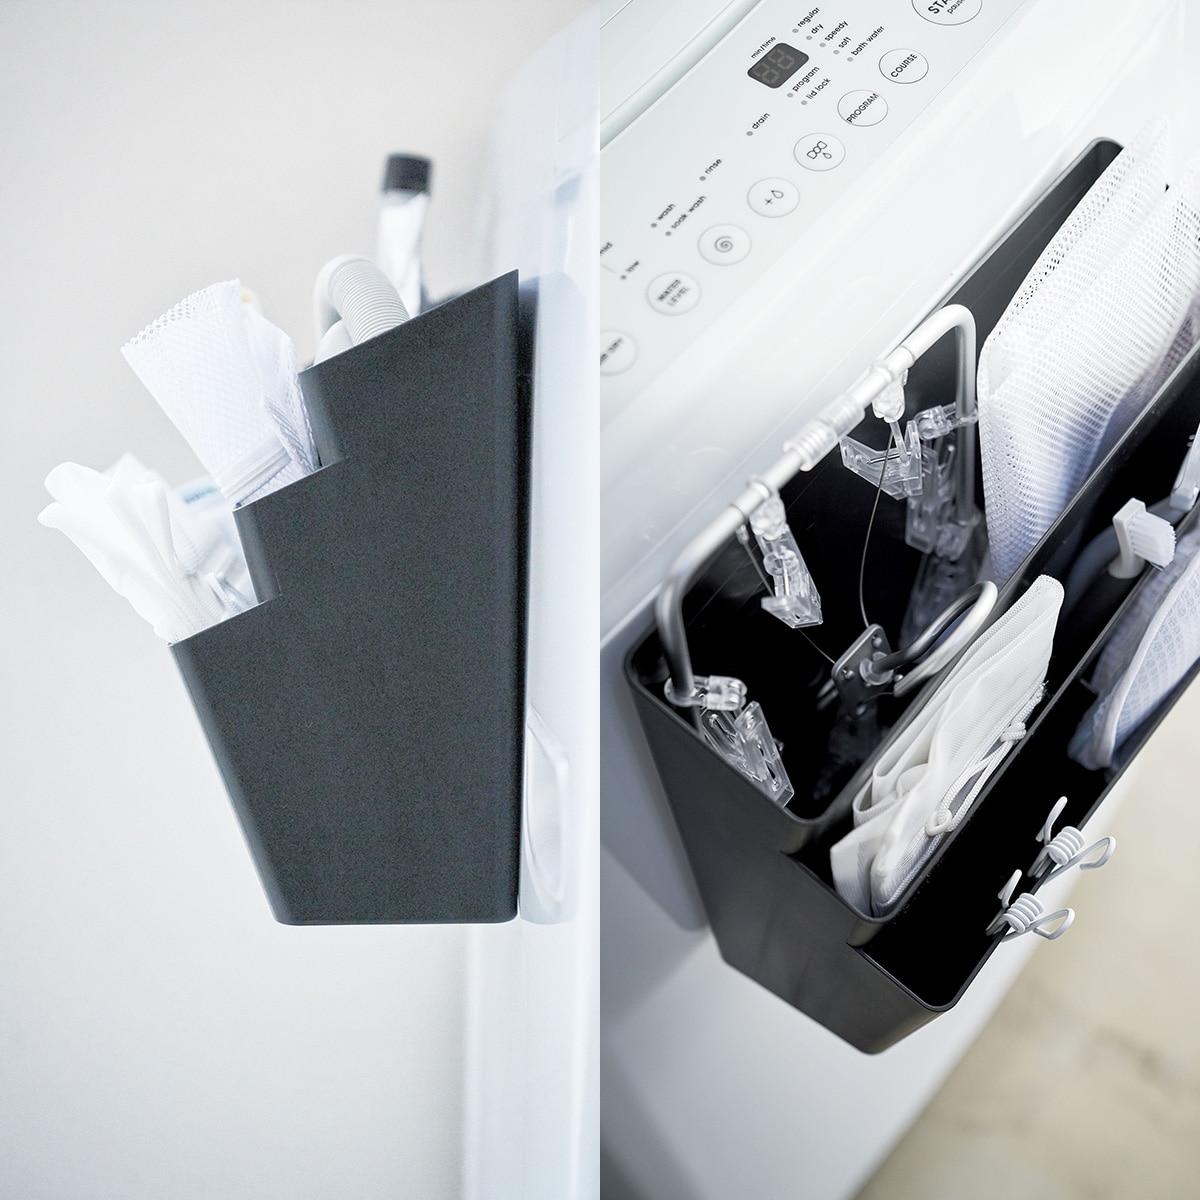 Tower タワー 洗濯機横マグネット収納ポケット 3段 マグネットで洗濯機の正面や側面に付けるだけ 一流の品質